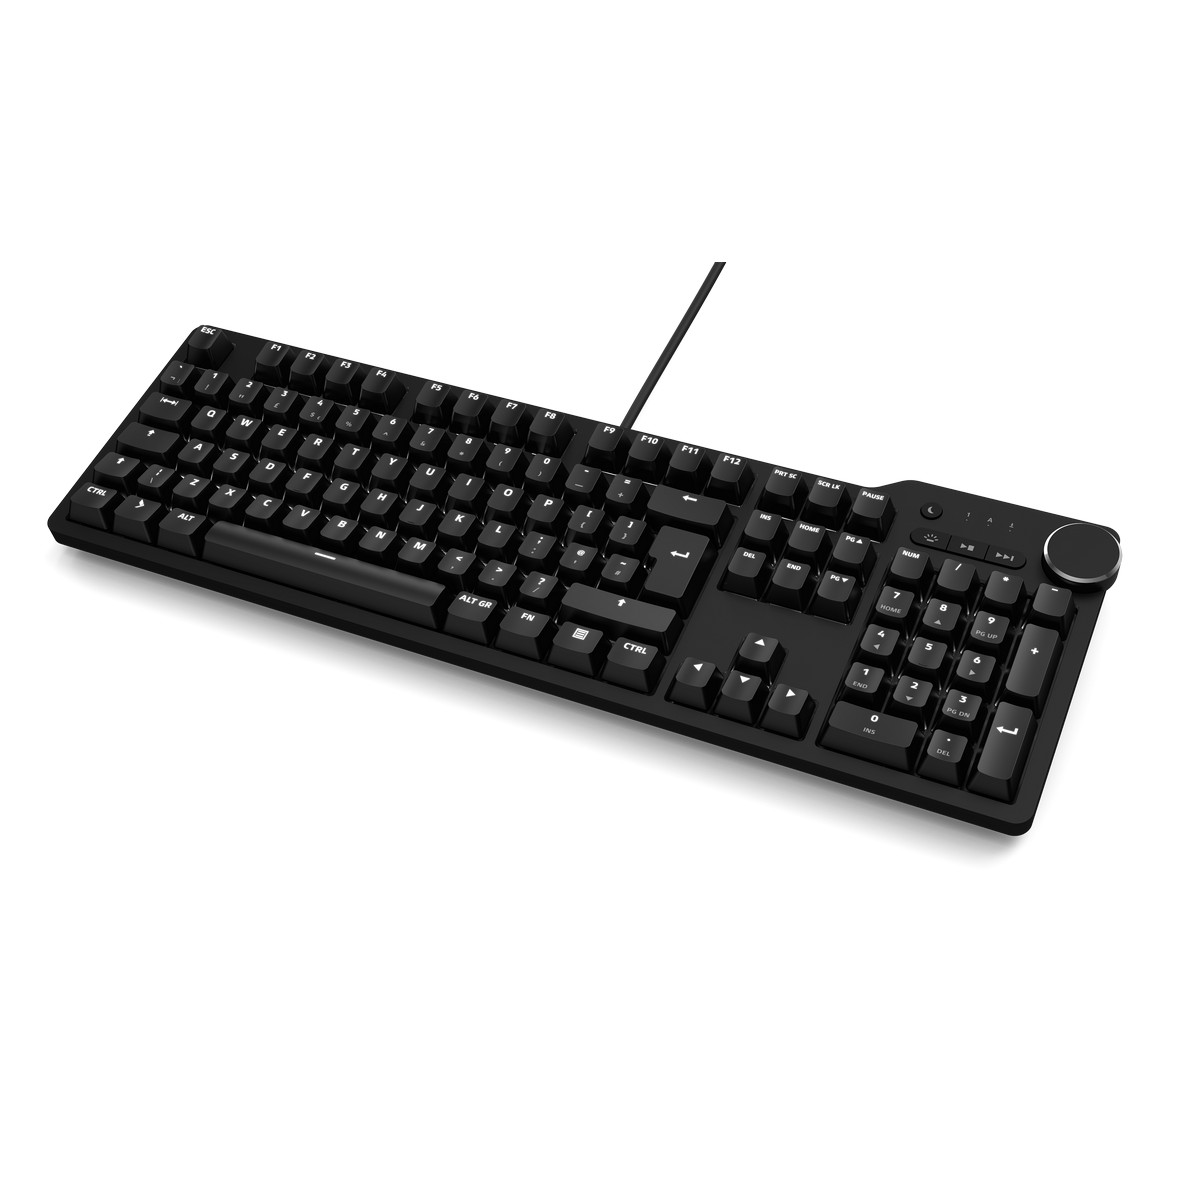 Das Keyboard Pro 6 Mechanical Gaming keyboard